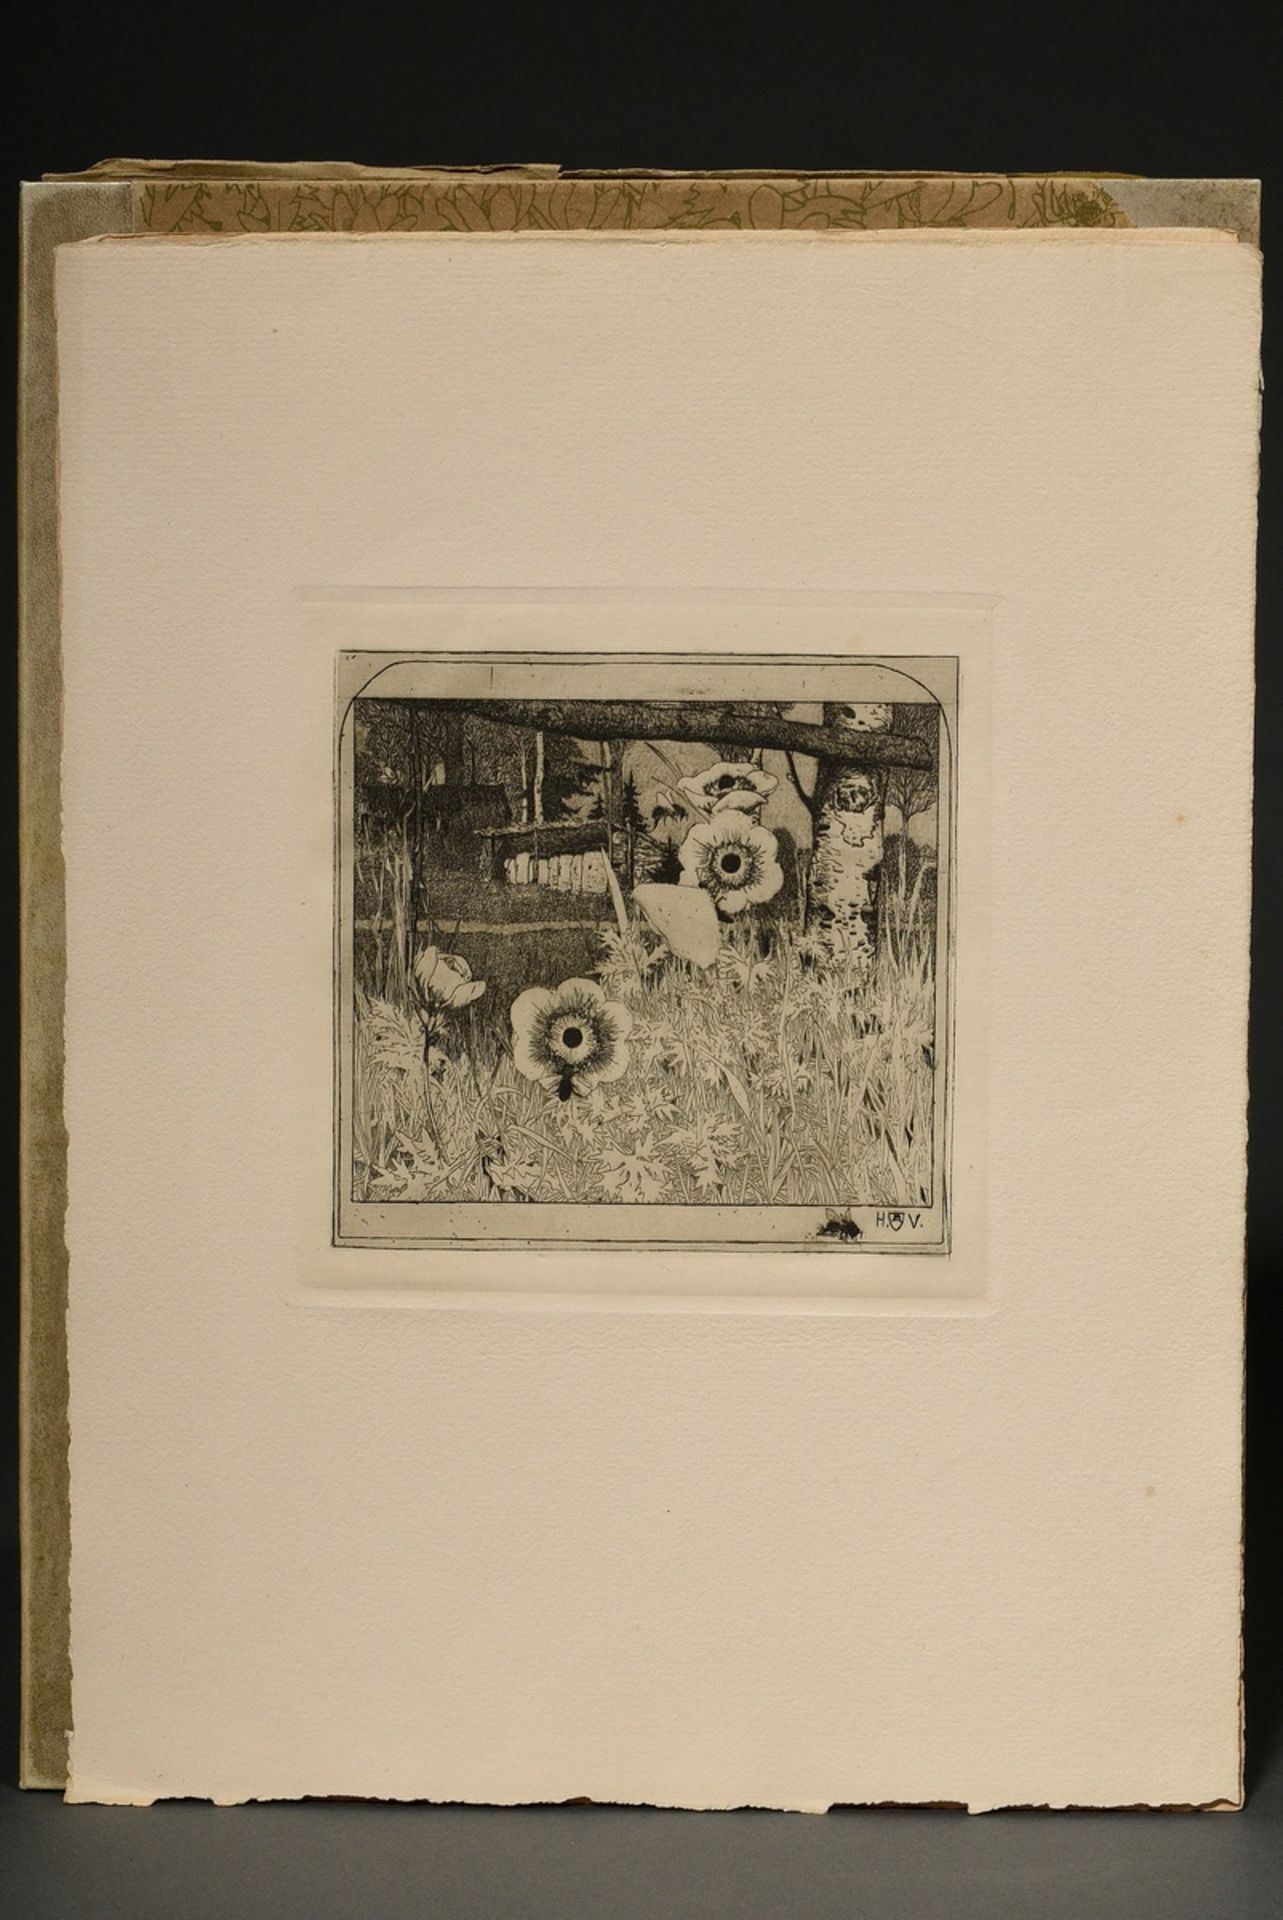 Vogeler, Heinrich (1872-1942) "An den Frühling" 1899/1901, portfolio with 10 etchings and prelimina - Image 4 of 25